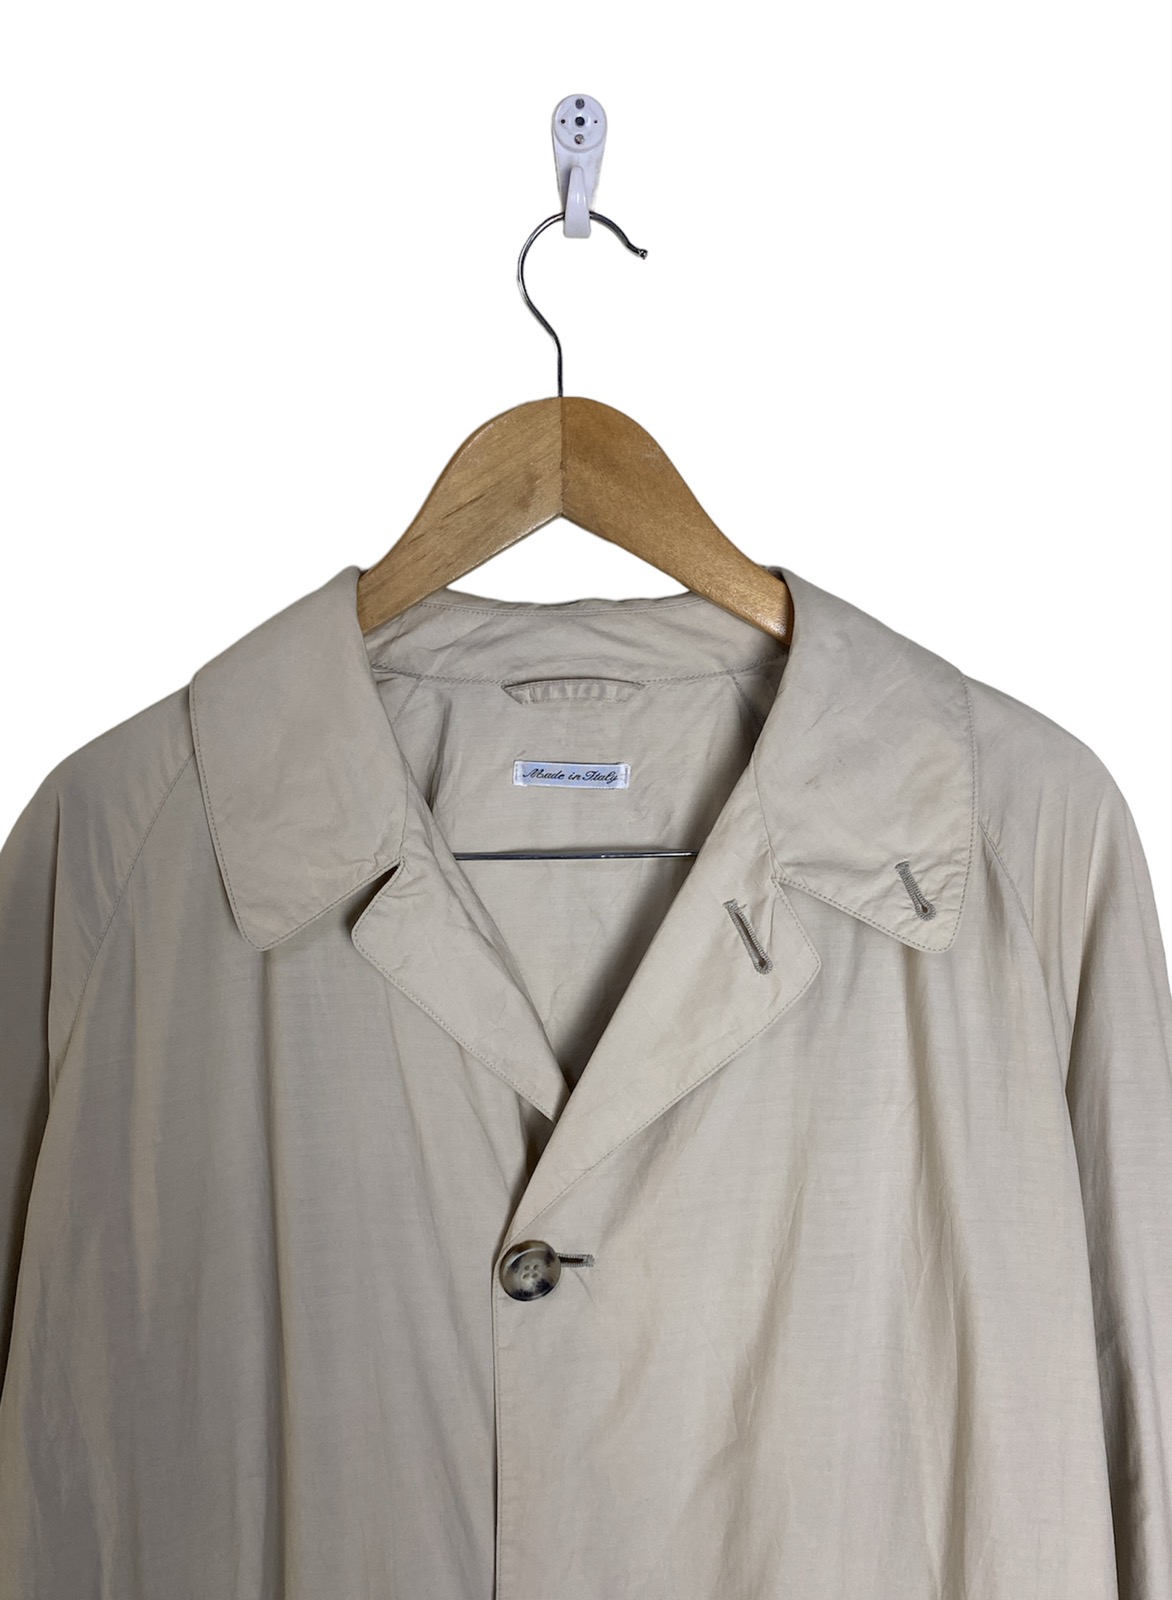 Giorgio Armani - Giorgio Armani Long Coat Jacket Made in Italy - 2